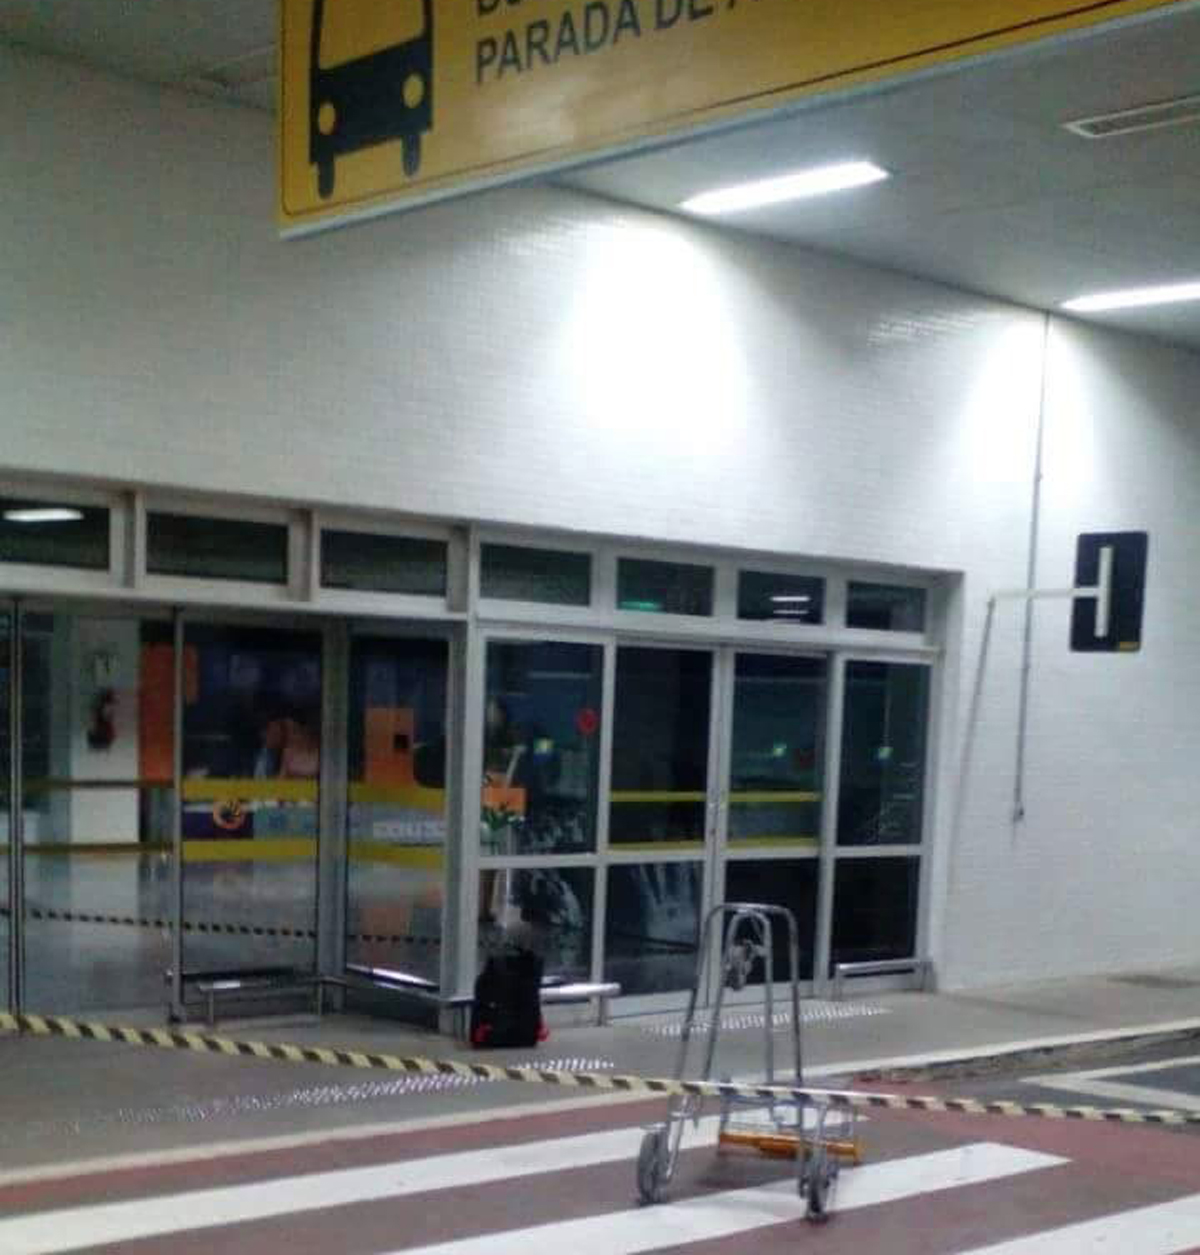 Polícia Federal explode bagagem suspeita em aeroporto de Foz do Iguaçu.